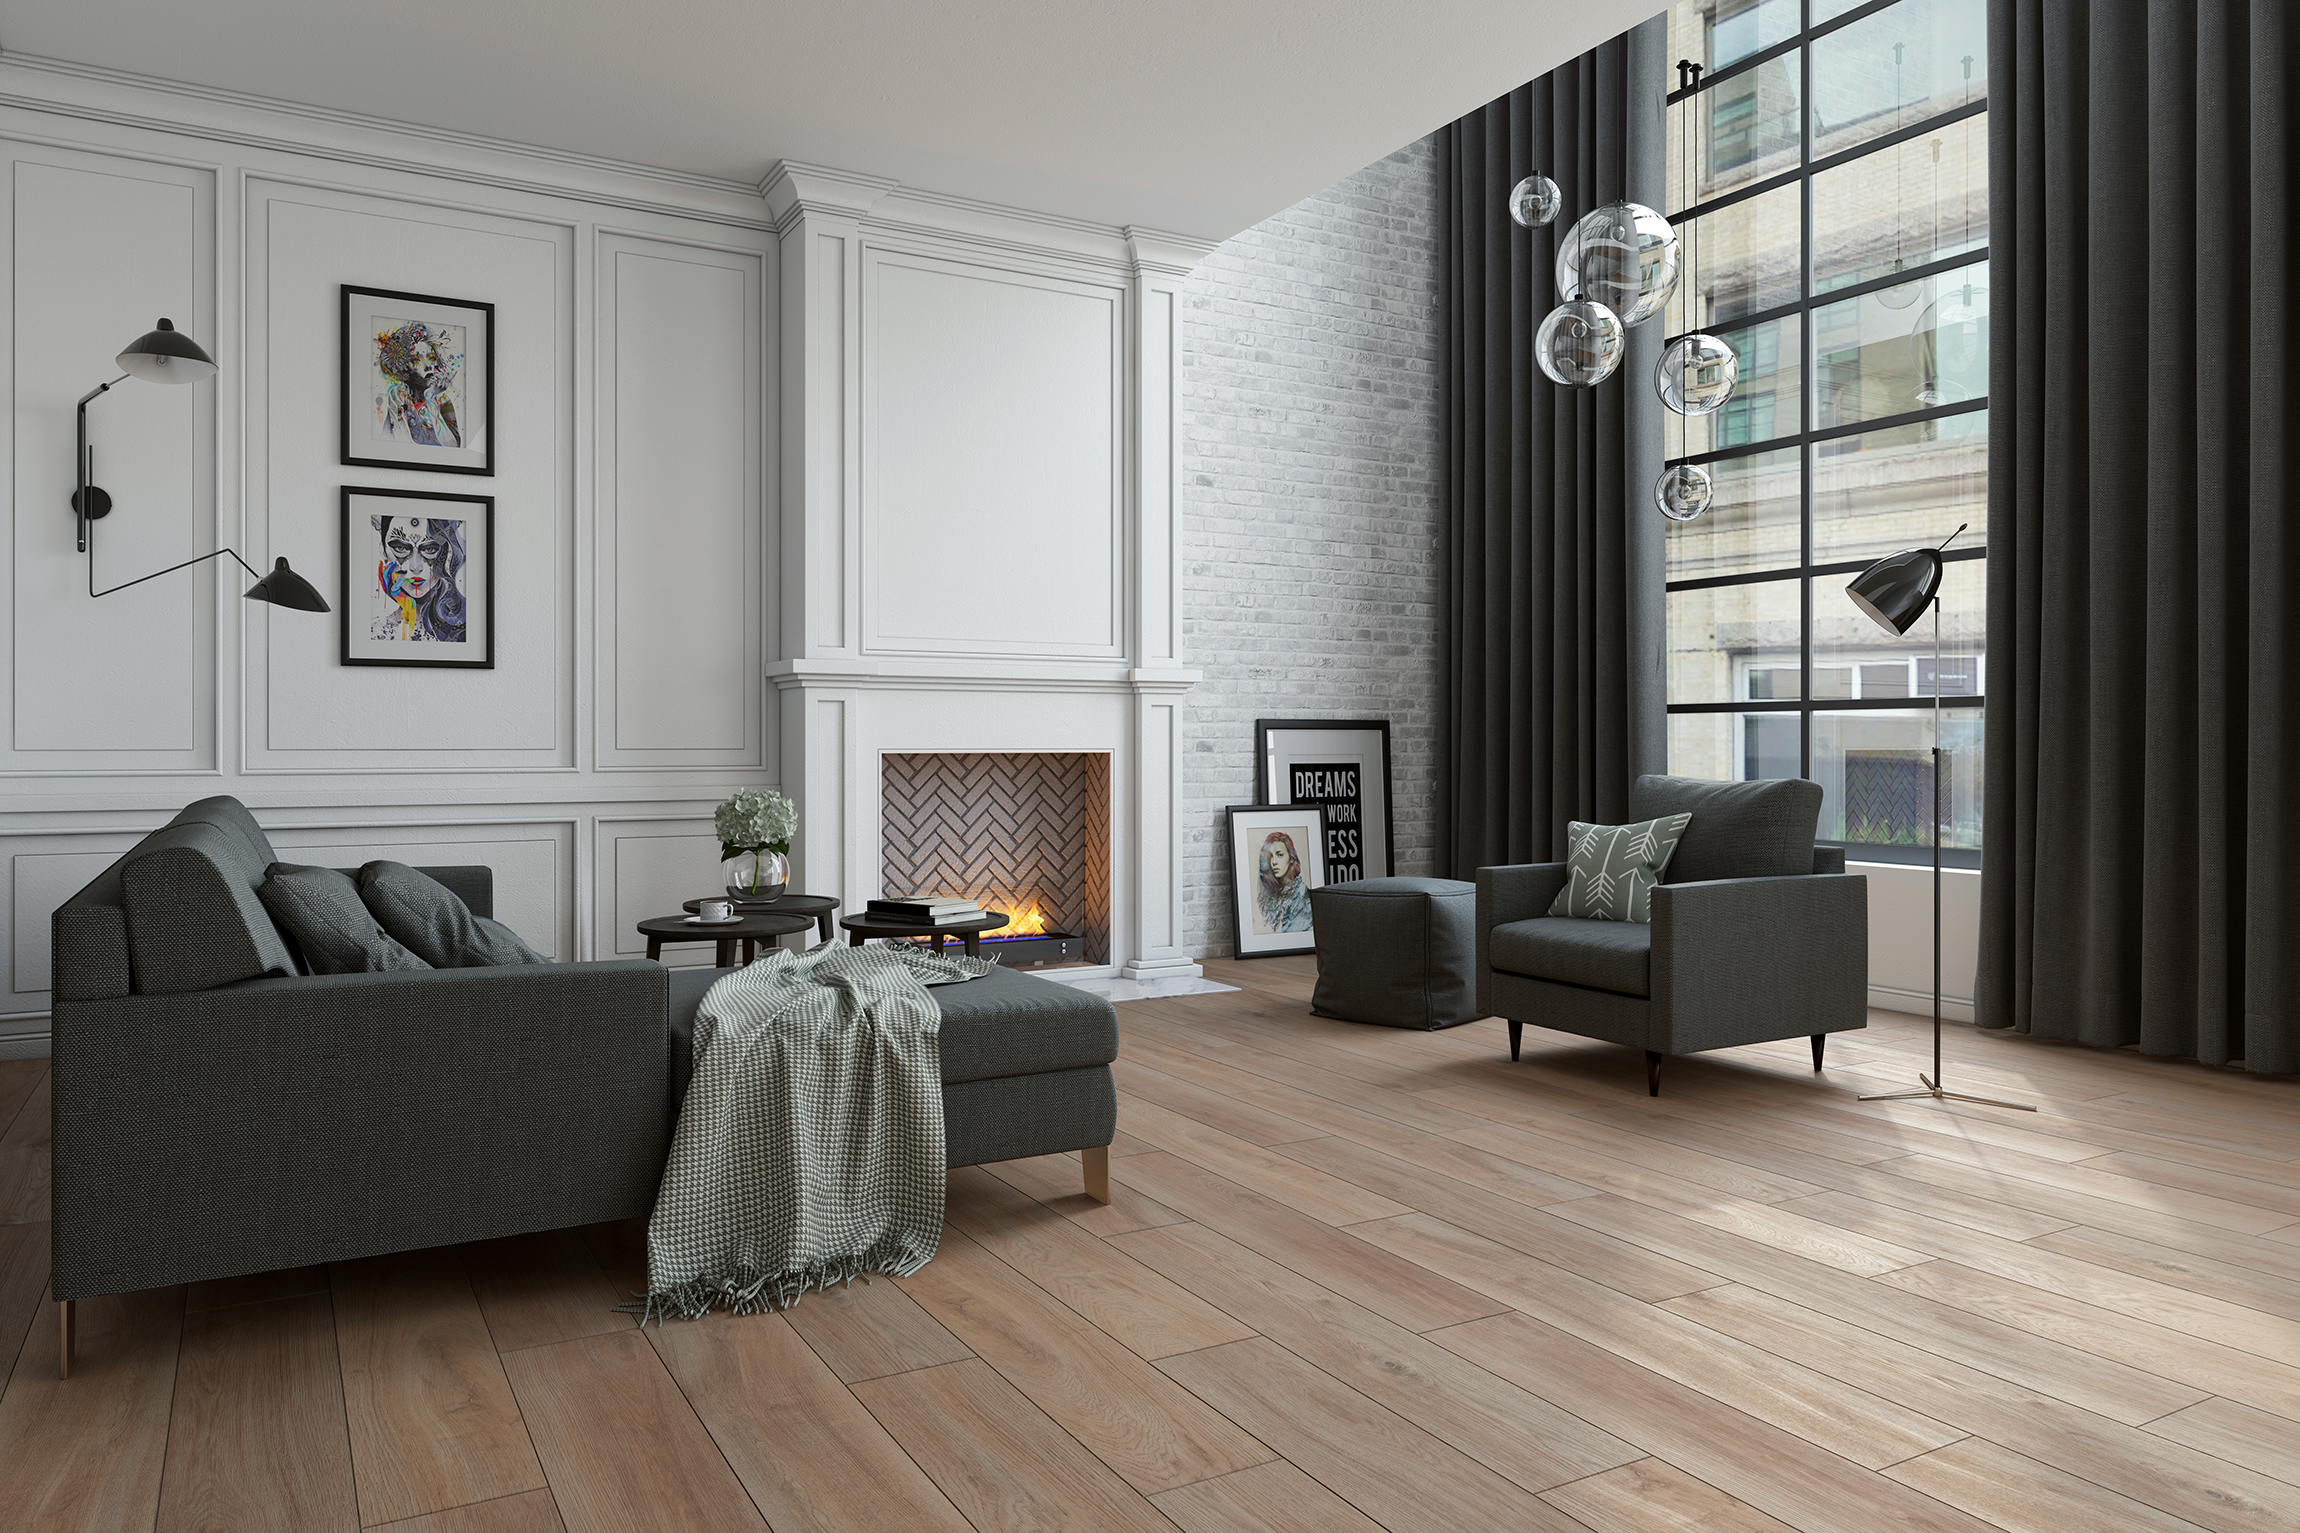 Living Room Design CG Rendering for Light Wood Floors